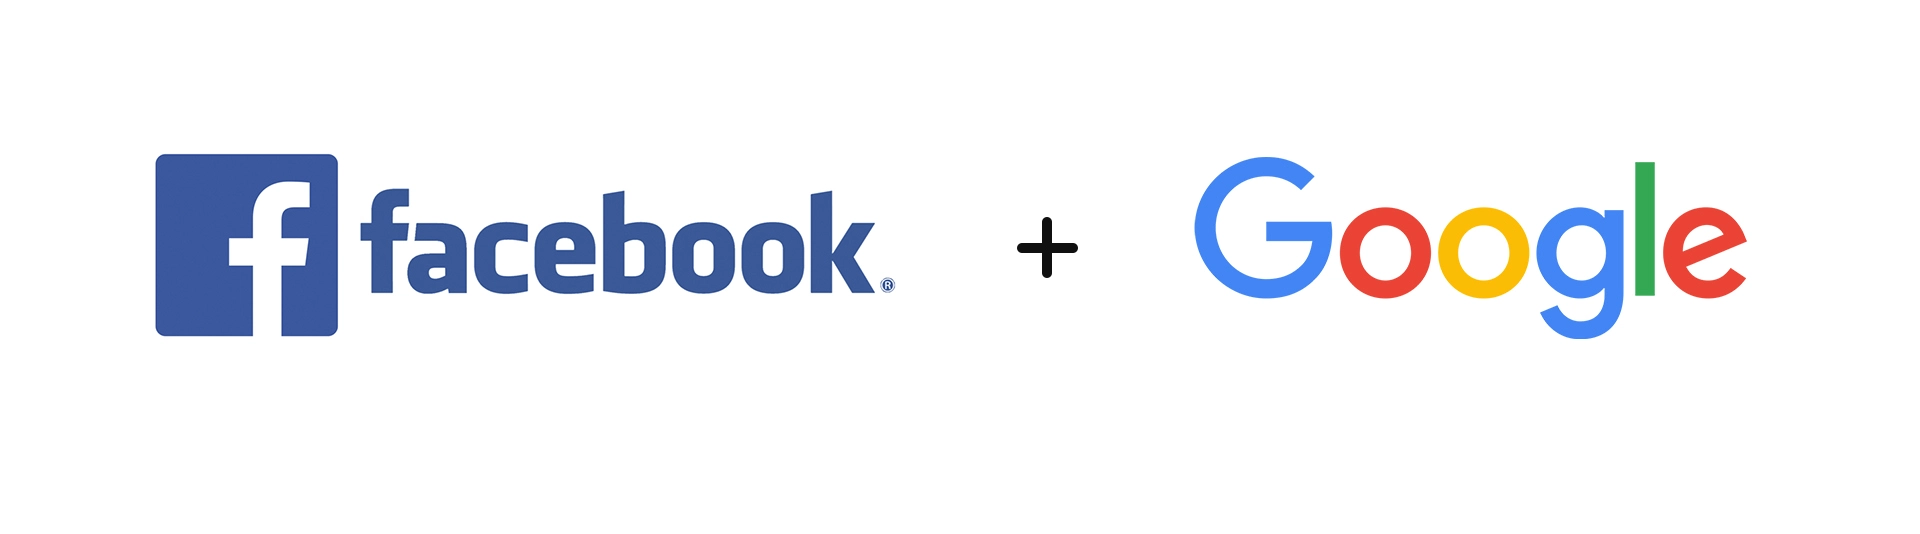 google and facebook logo